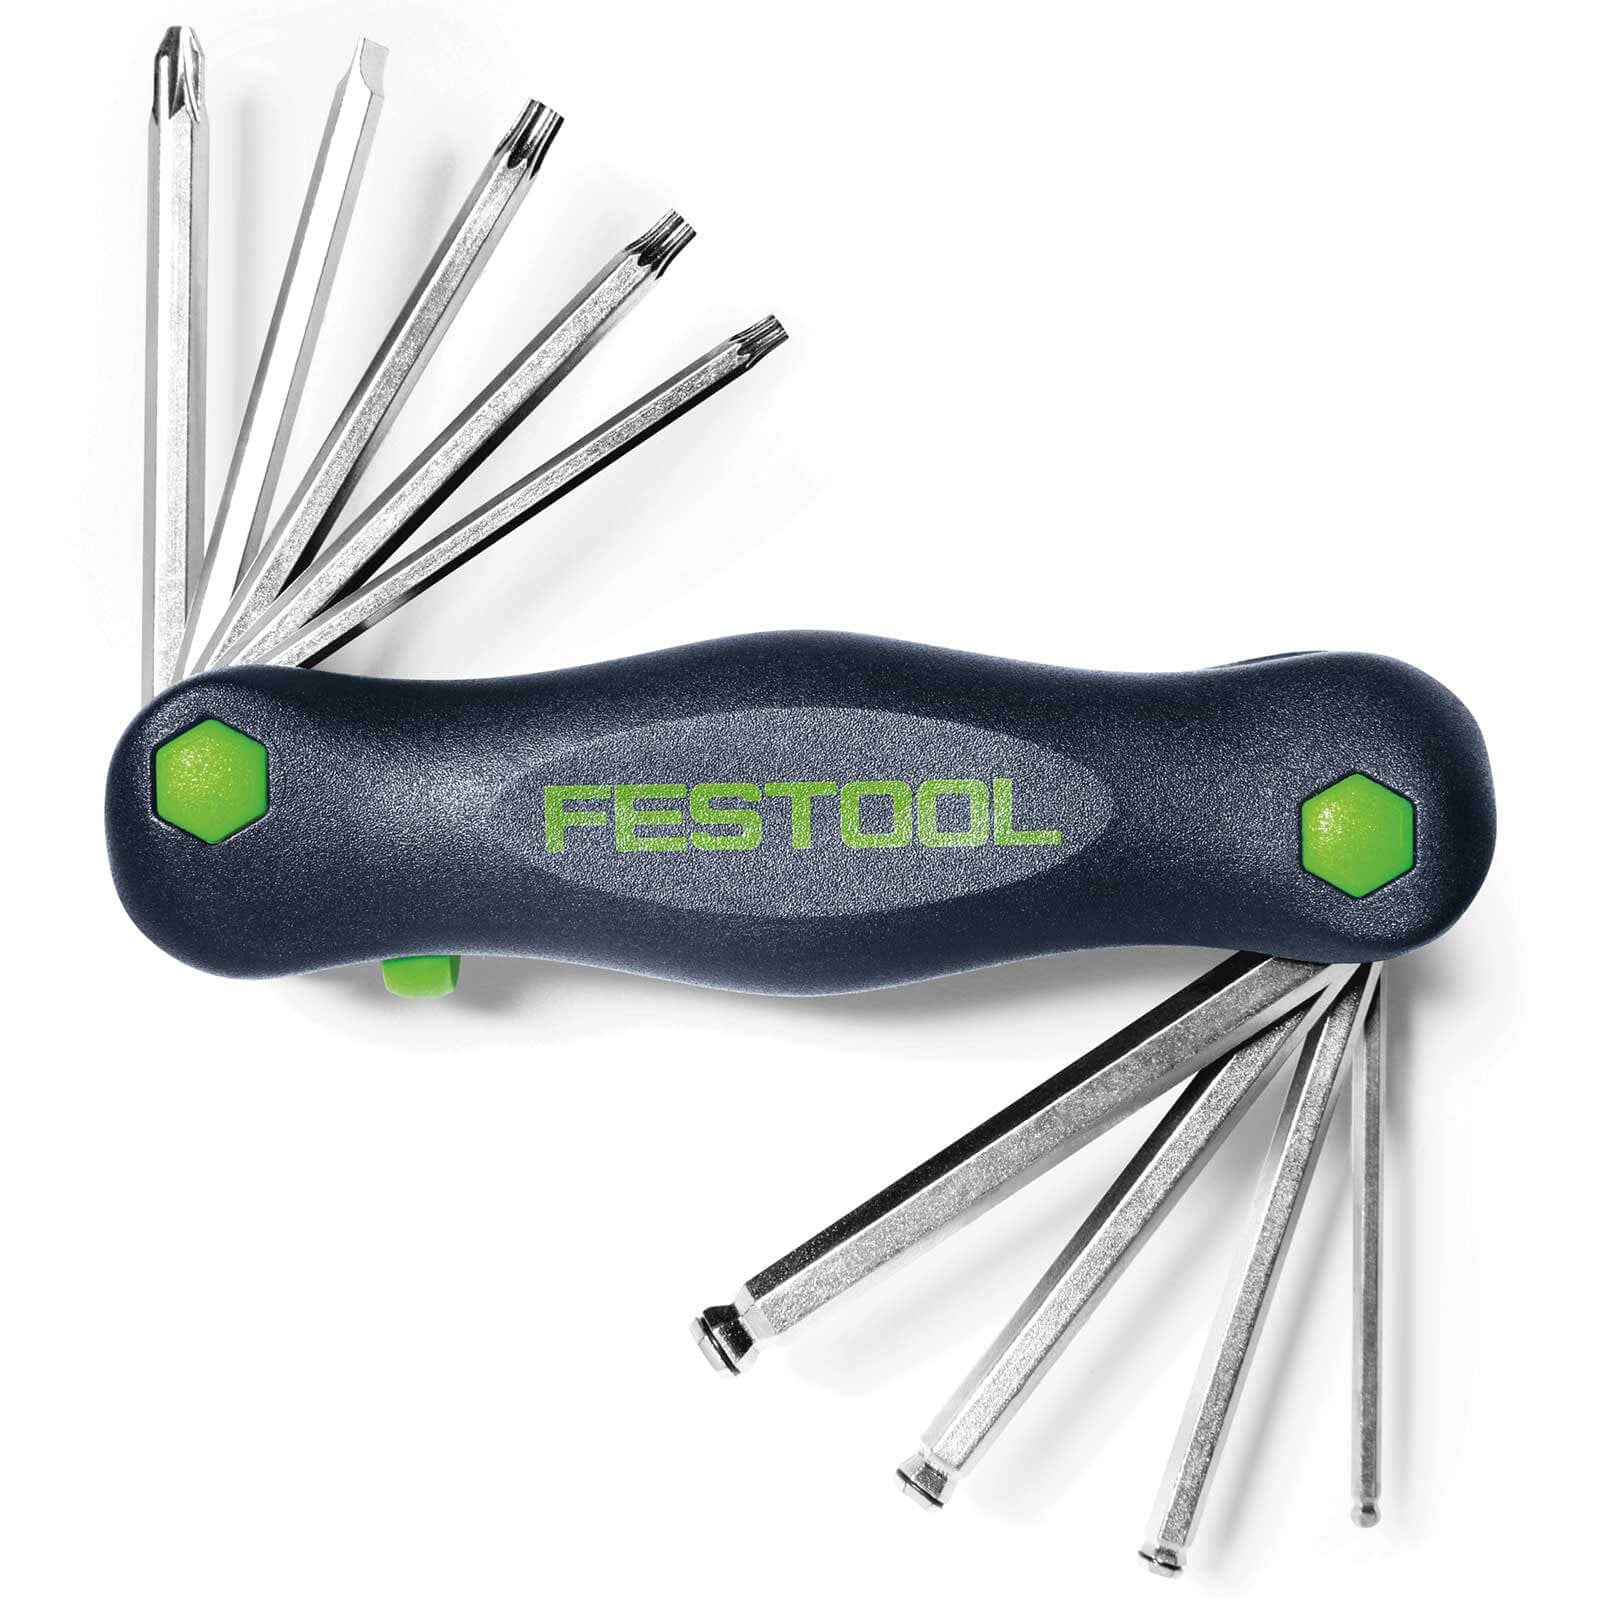 Festool Toolie multi function tool 498863 Power Tool Services